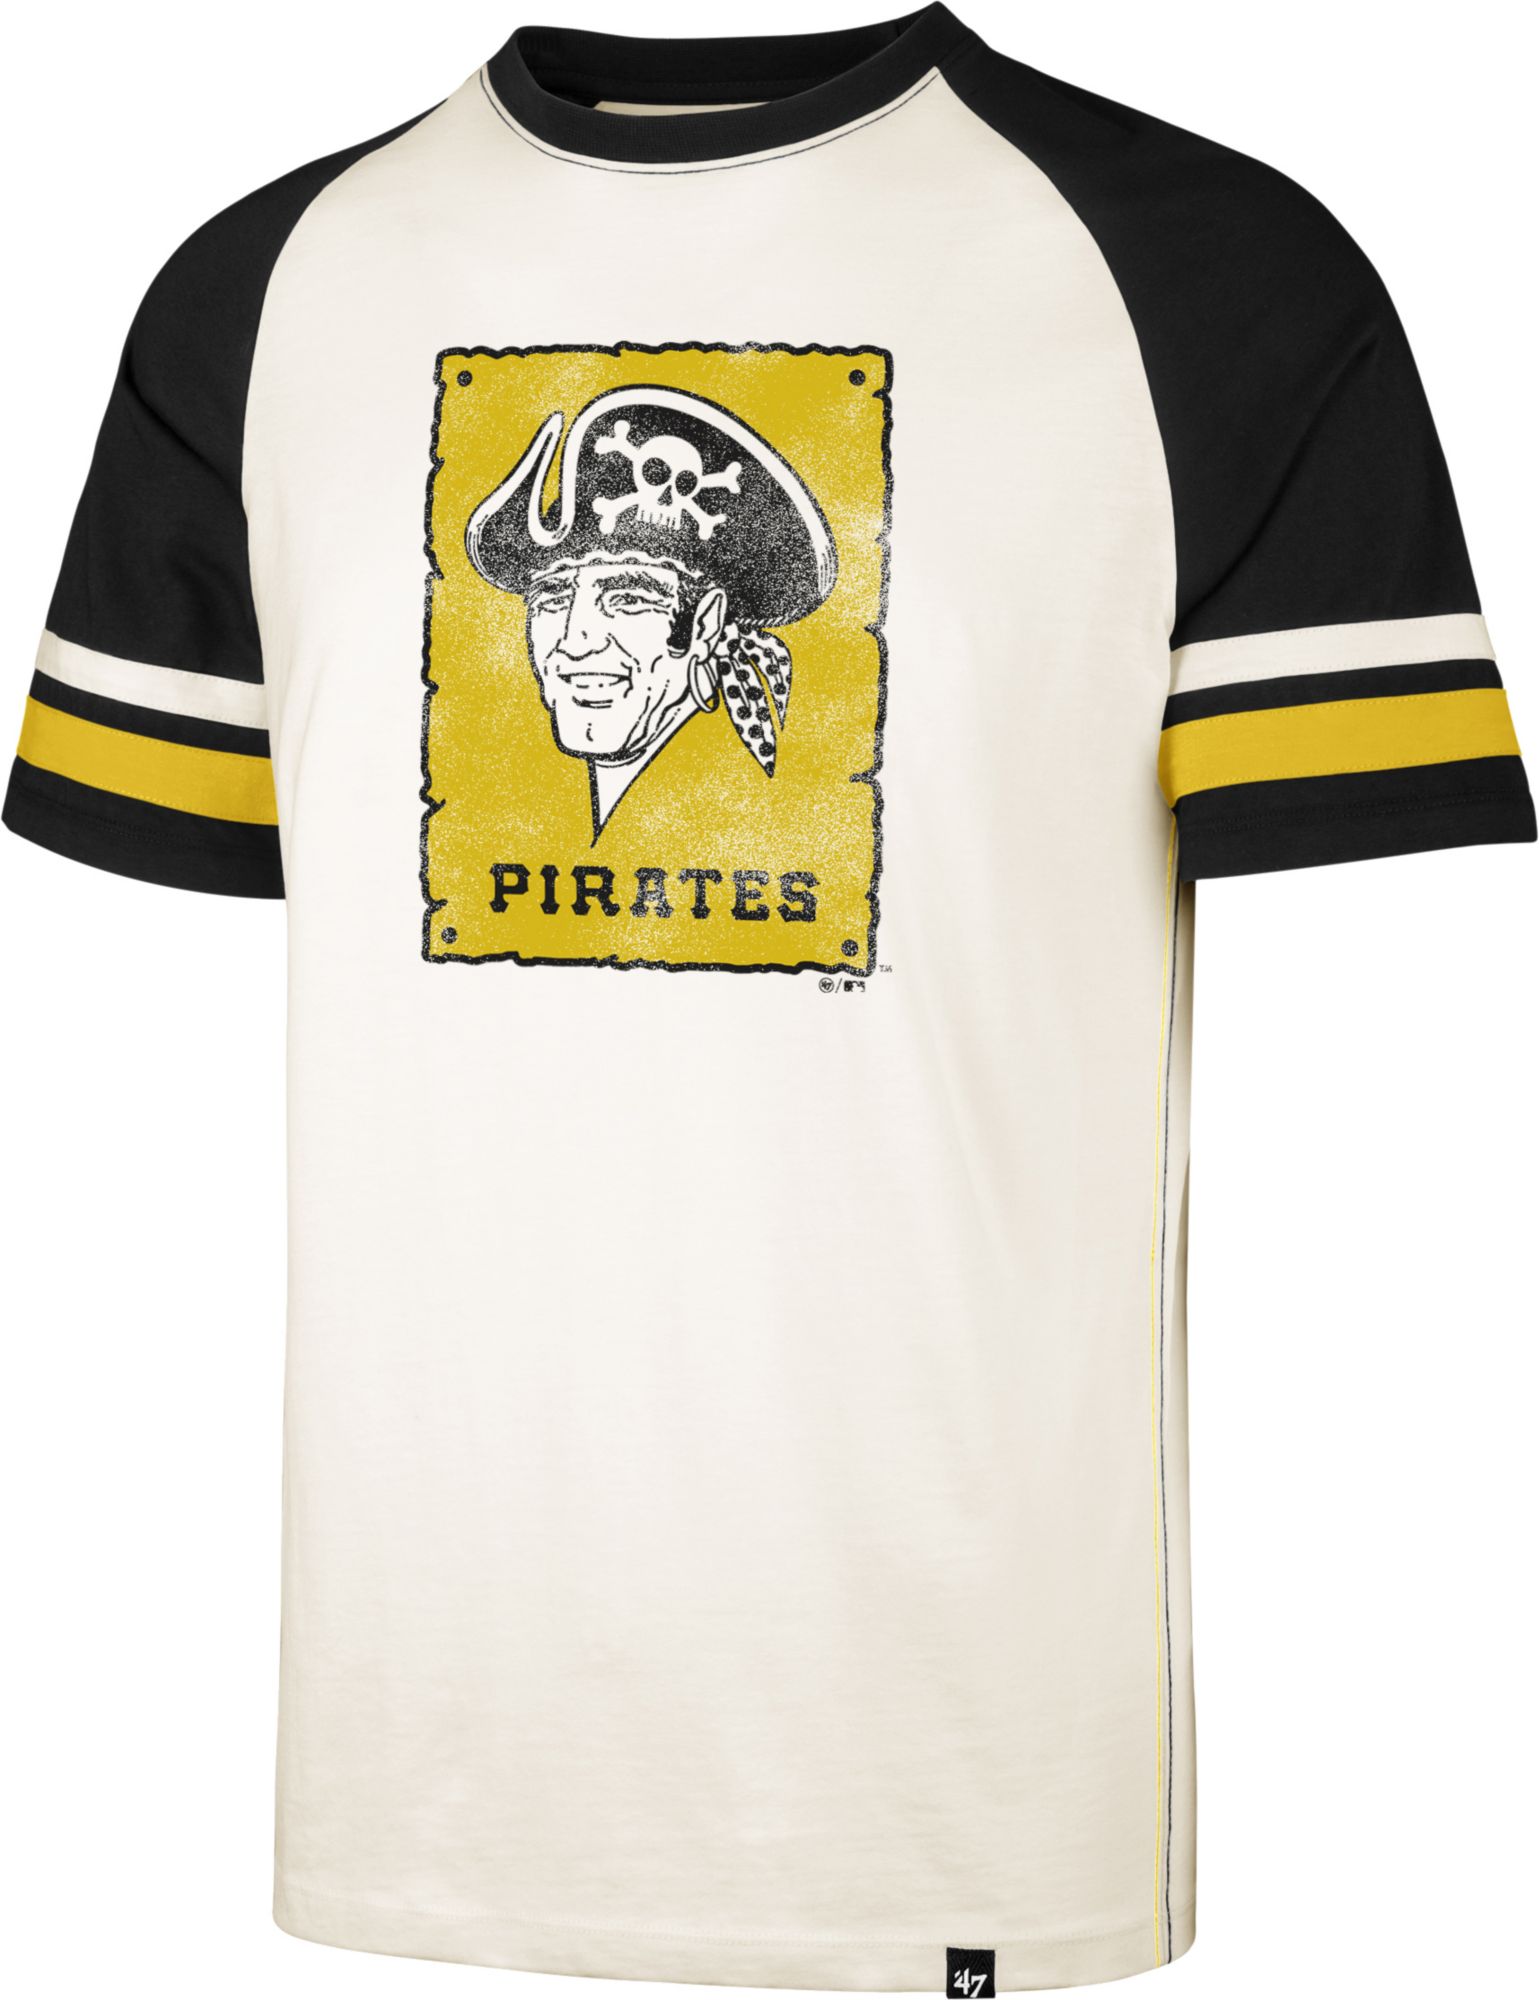 men's pittsburgh pirates shirts